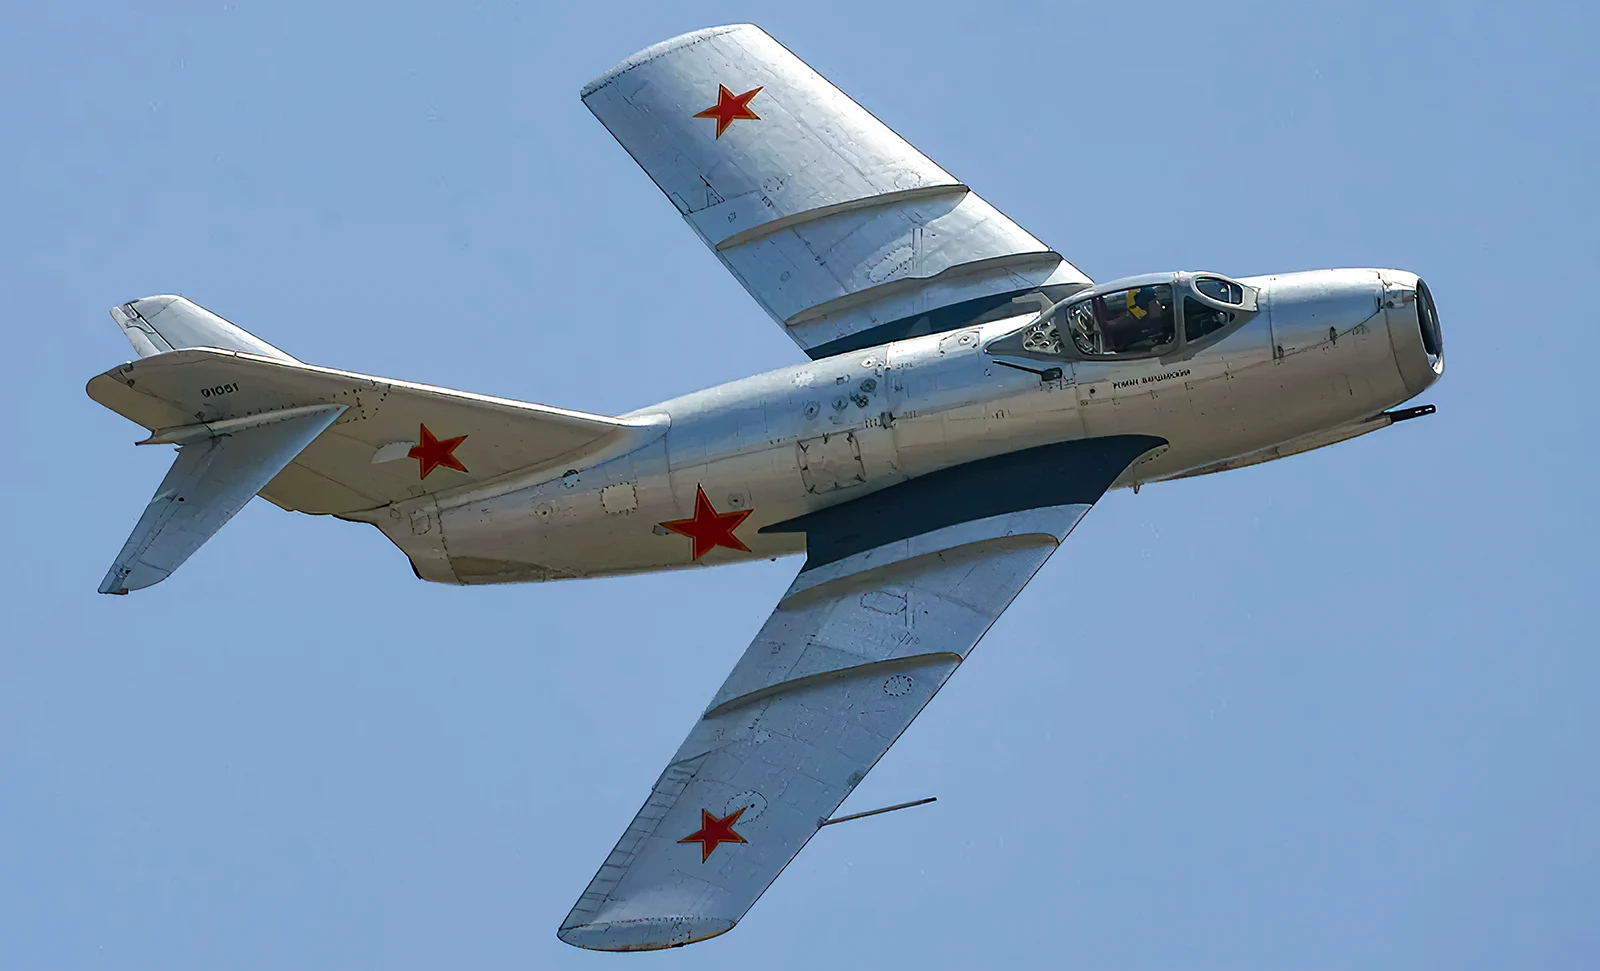 15.000 construidos: El caza ruso MiG-15 era una verdadera potencia